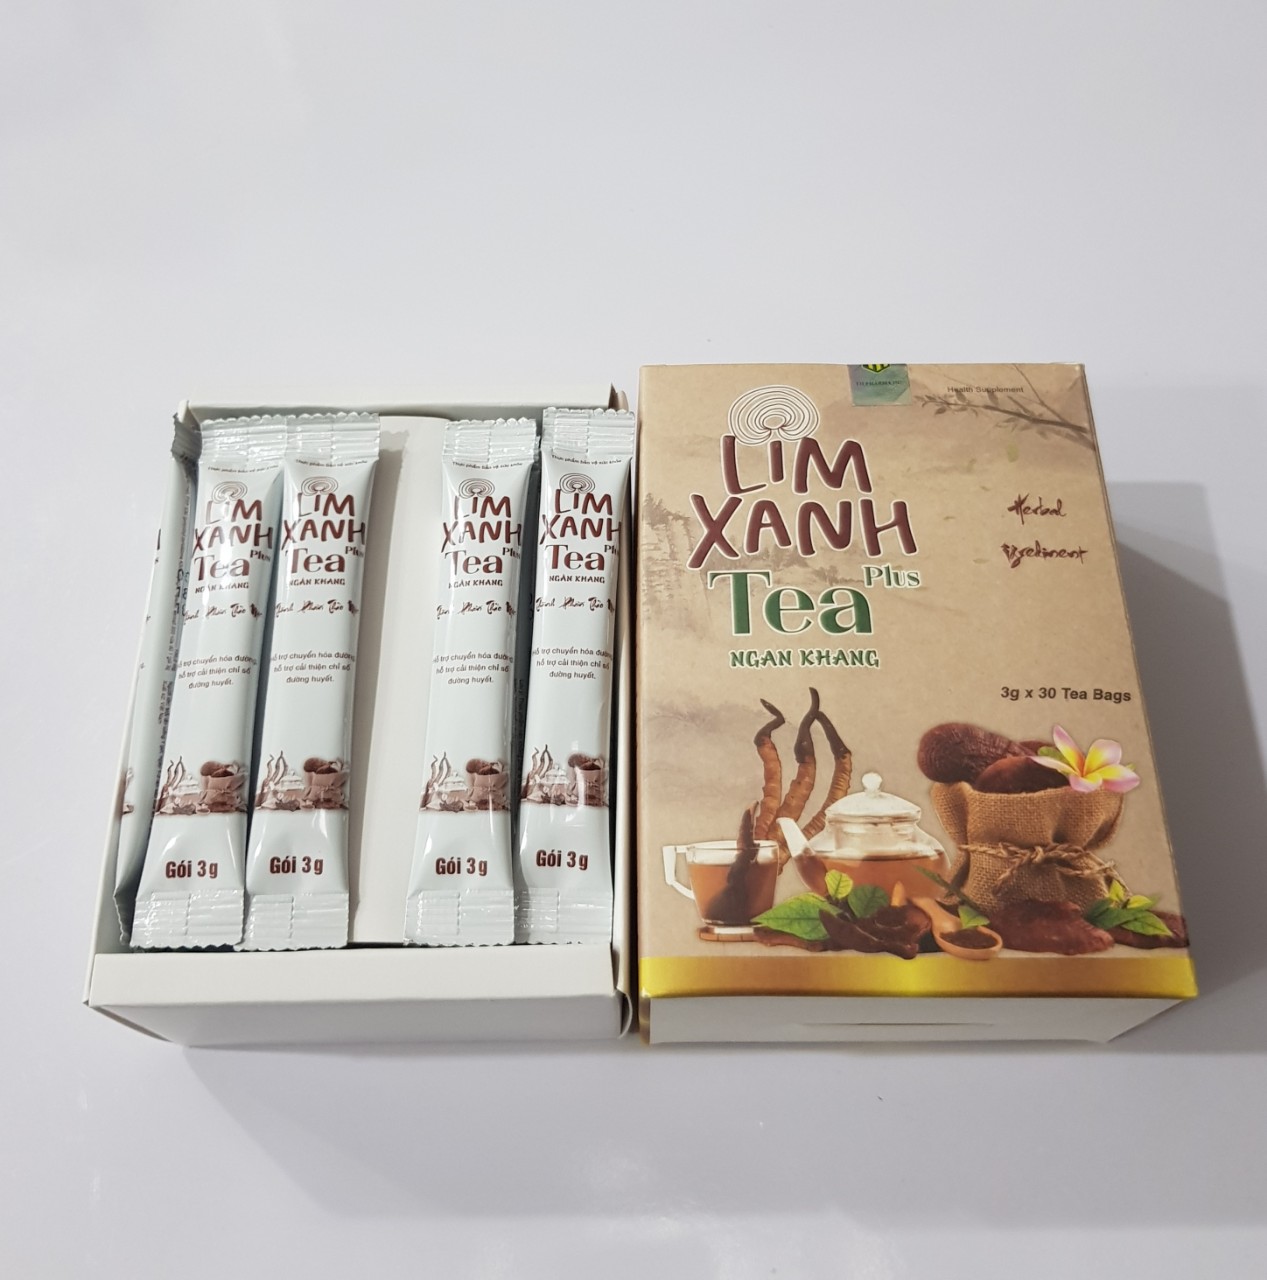 Trà lim xanh tea plus Ngân Khang hỗ trợ chuyển hóa đường, hỗ trợ cải thiện chỉ số đường huyết